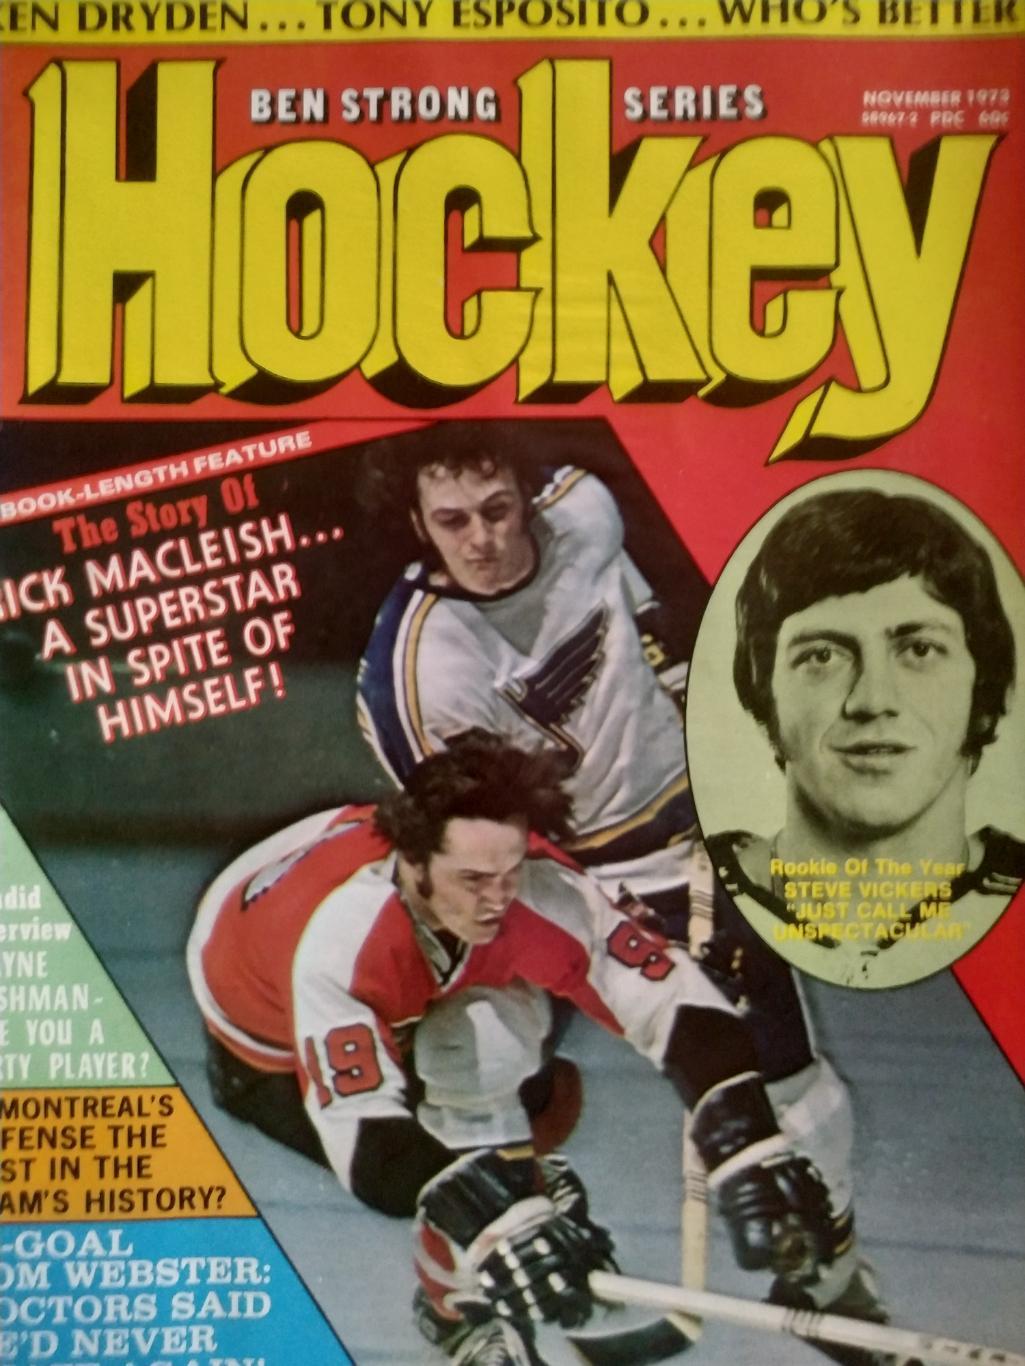 ЖУРНАЛ СПРАВОЧНИК НХЛ СПОРТ БЕН СТРОНГ ХОКЕЕЙ NOV 1973 NHL BEN STRONG HOCKEY